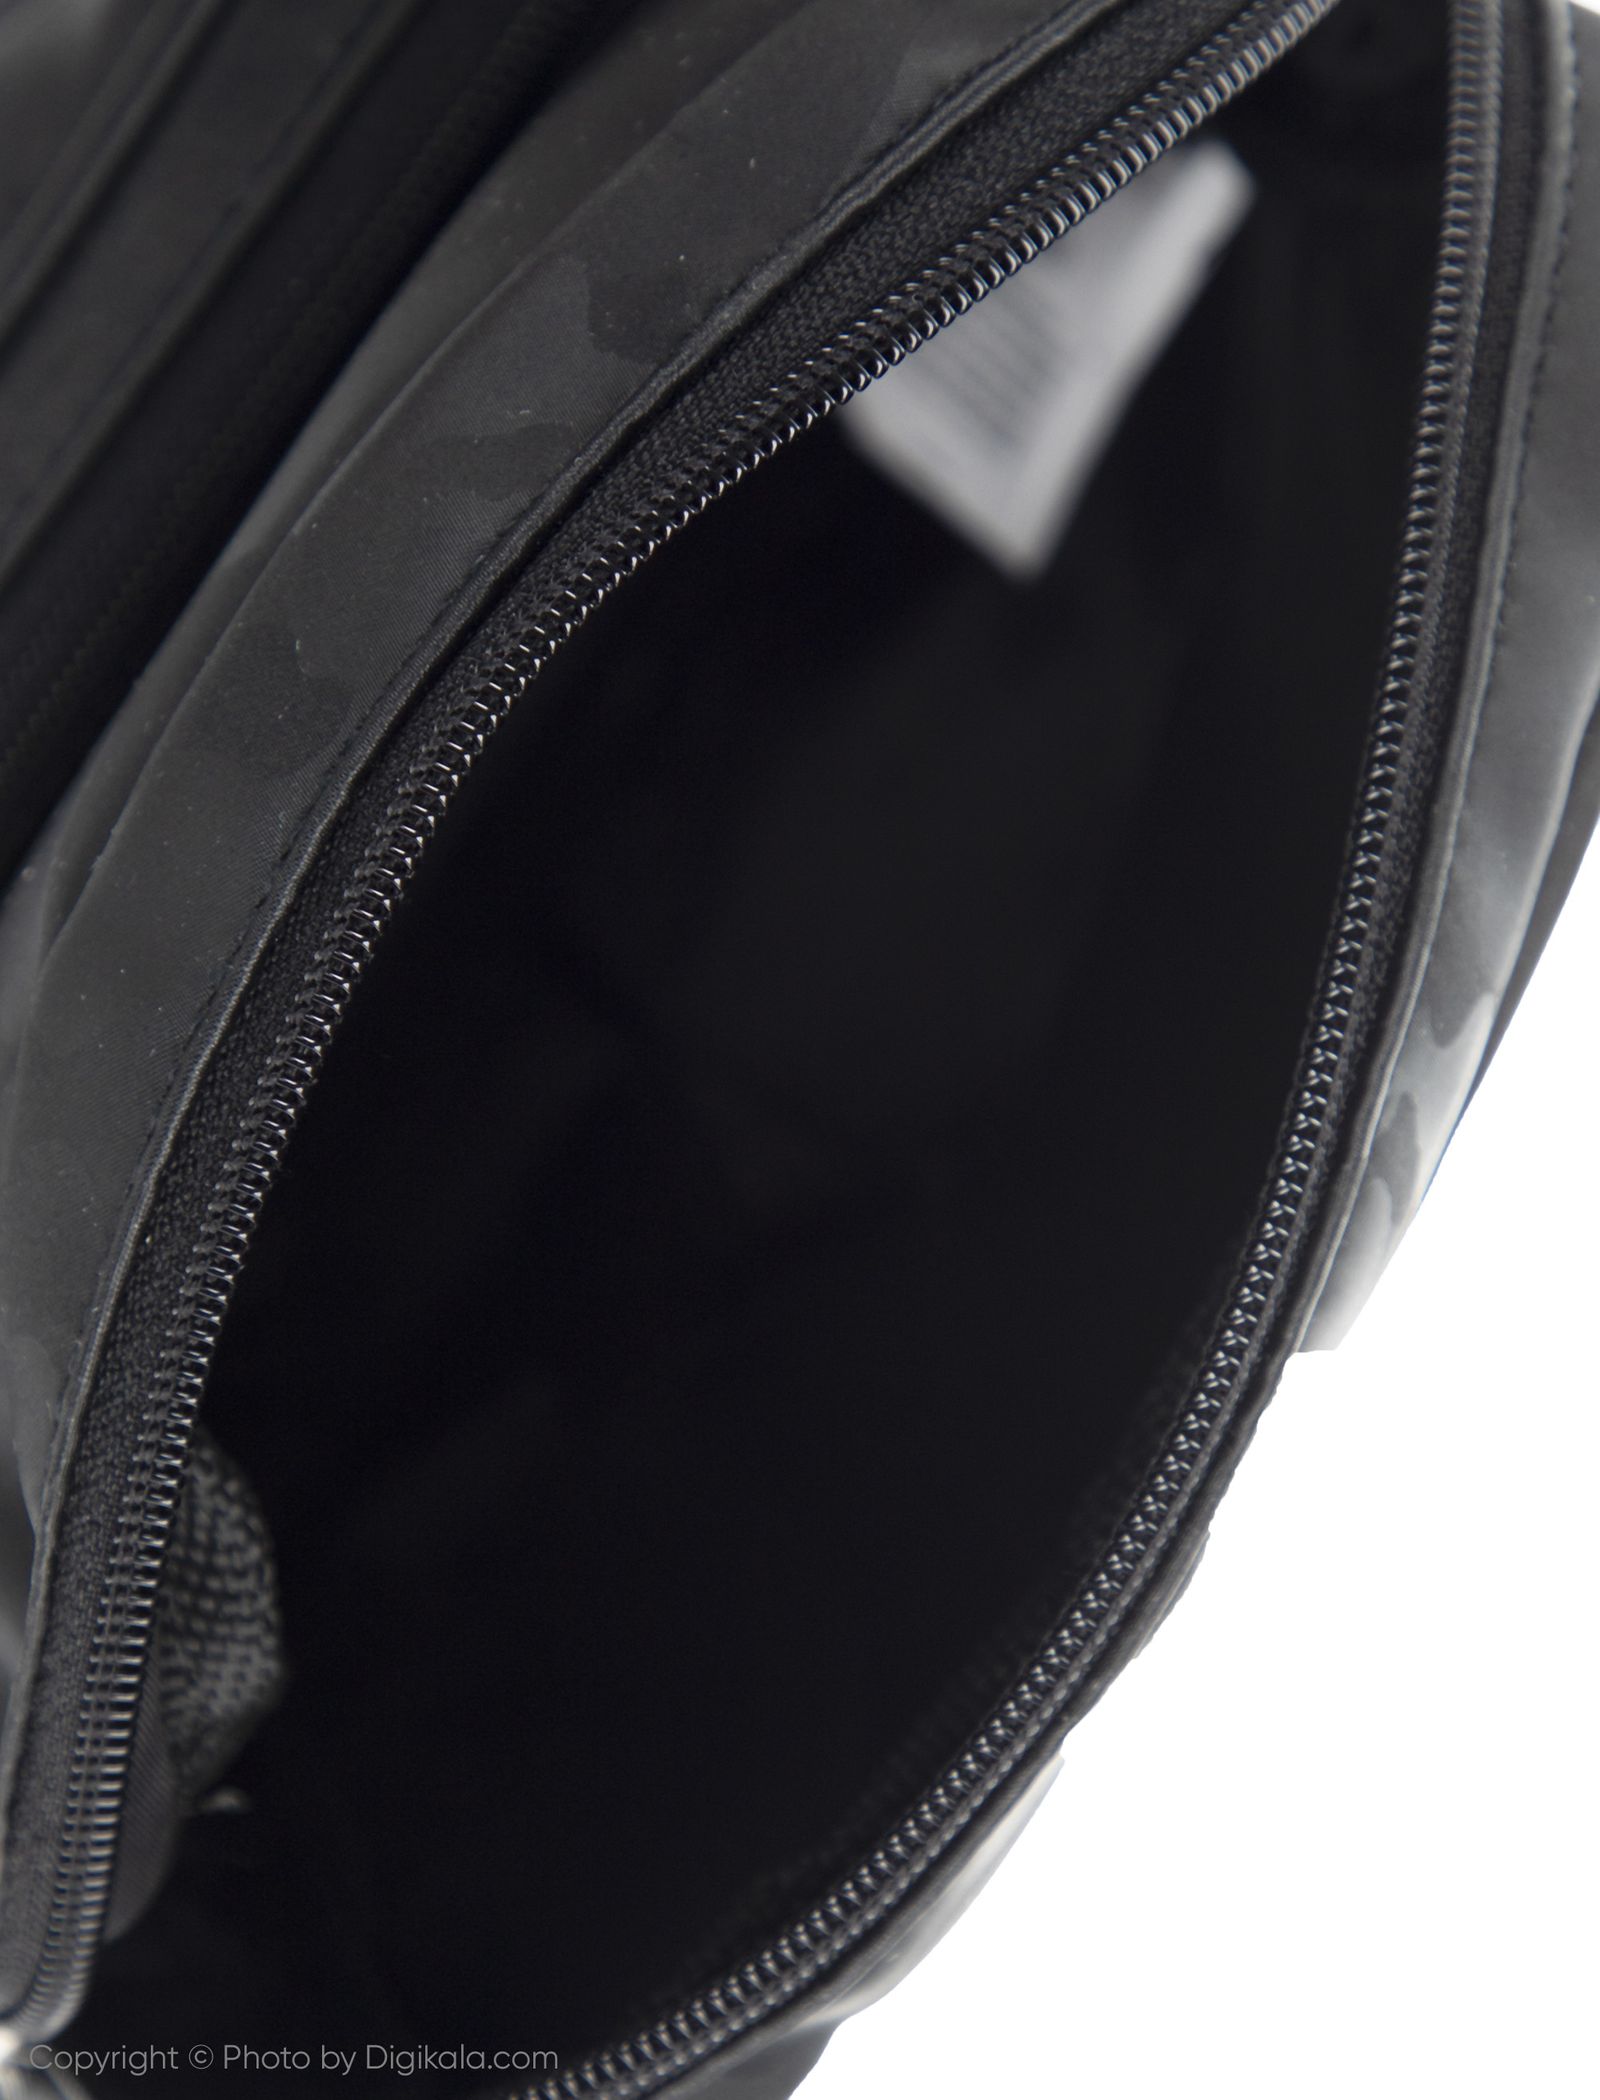 کیف رودوشی مردانه کالینز مدل CL1032175-BLACK - مشکی - 5